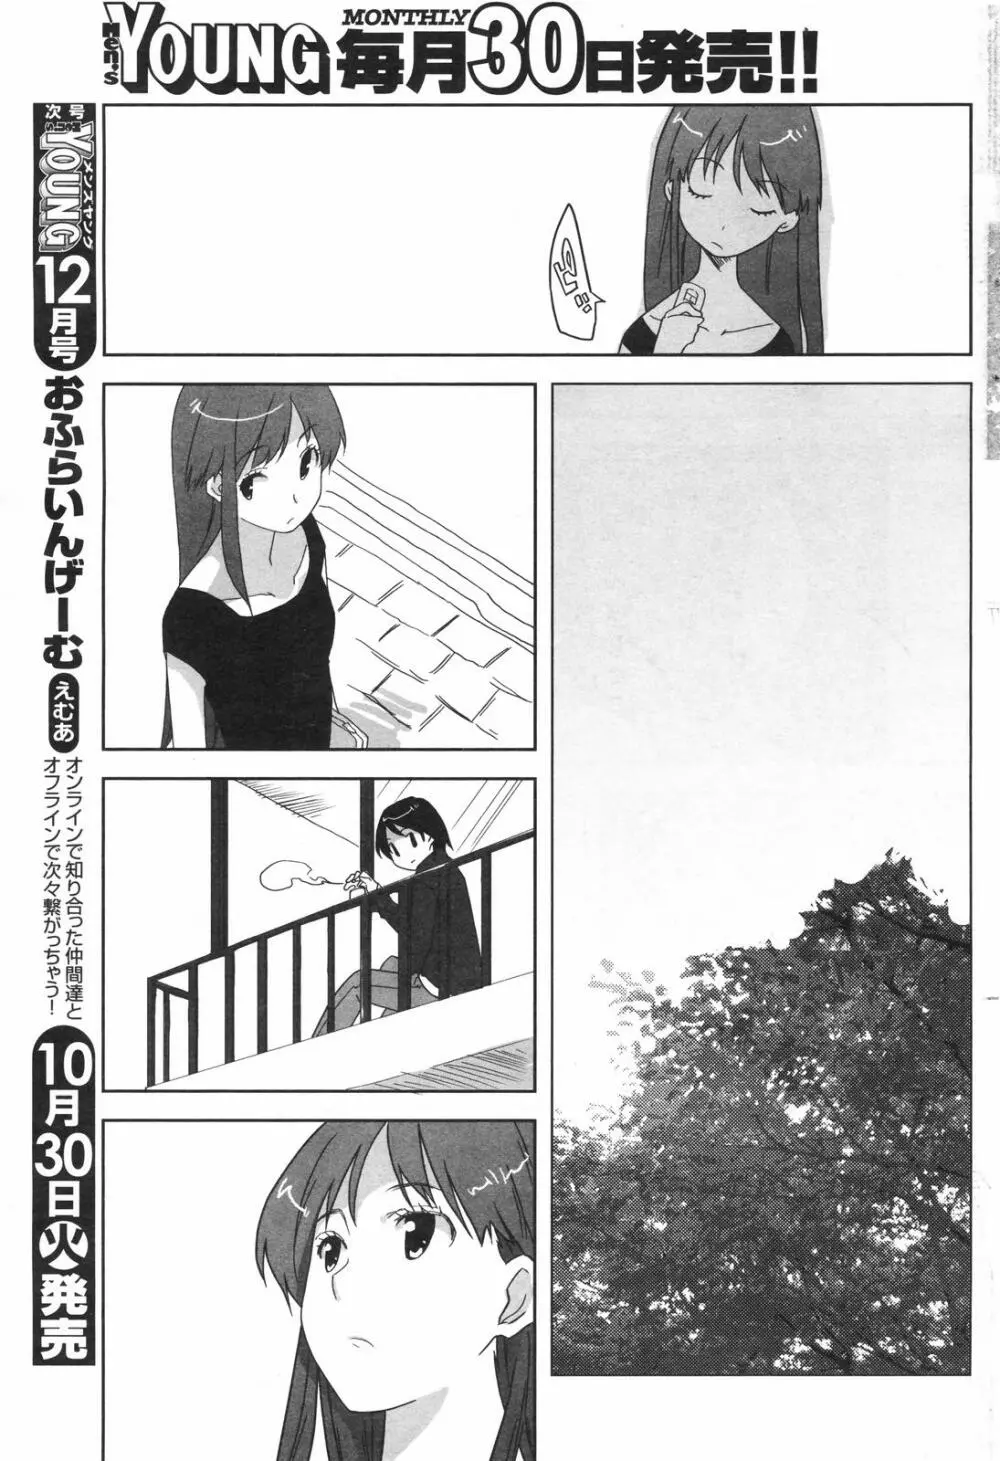 メンズヤングスペシャルIKAZUCHI雷 Vol.4 2007年12月号増刊 77ページ